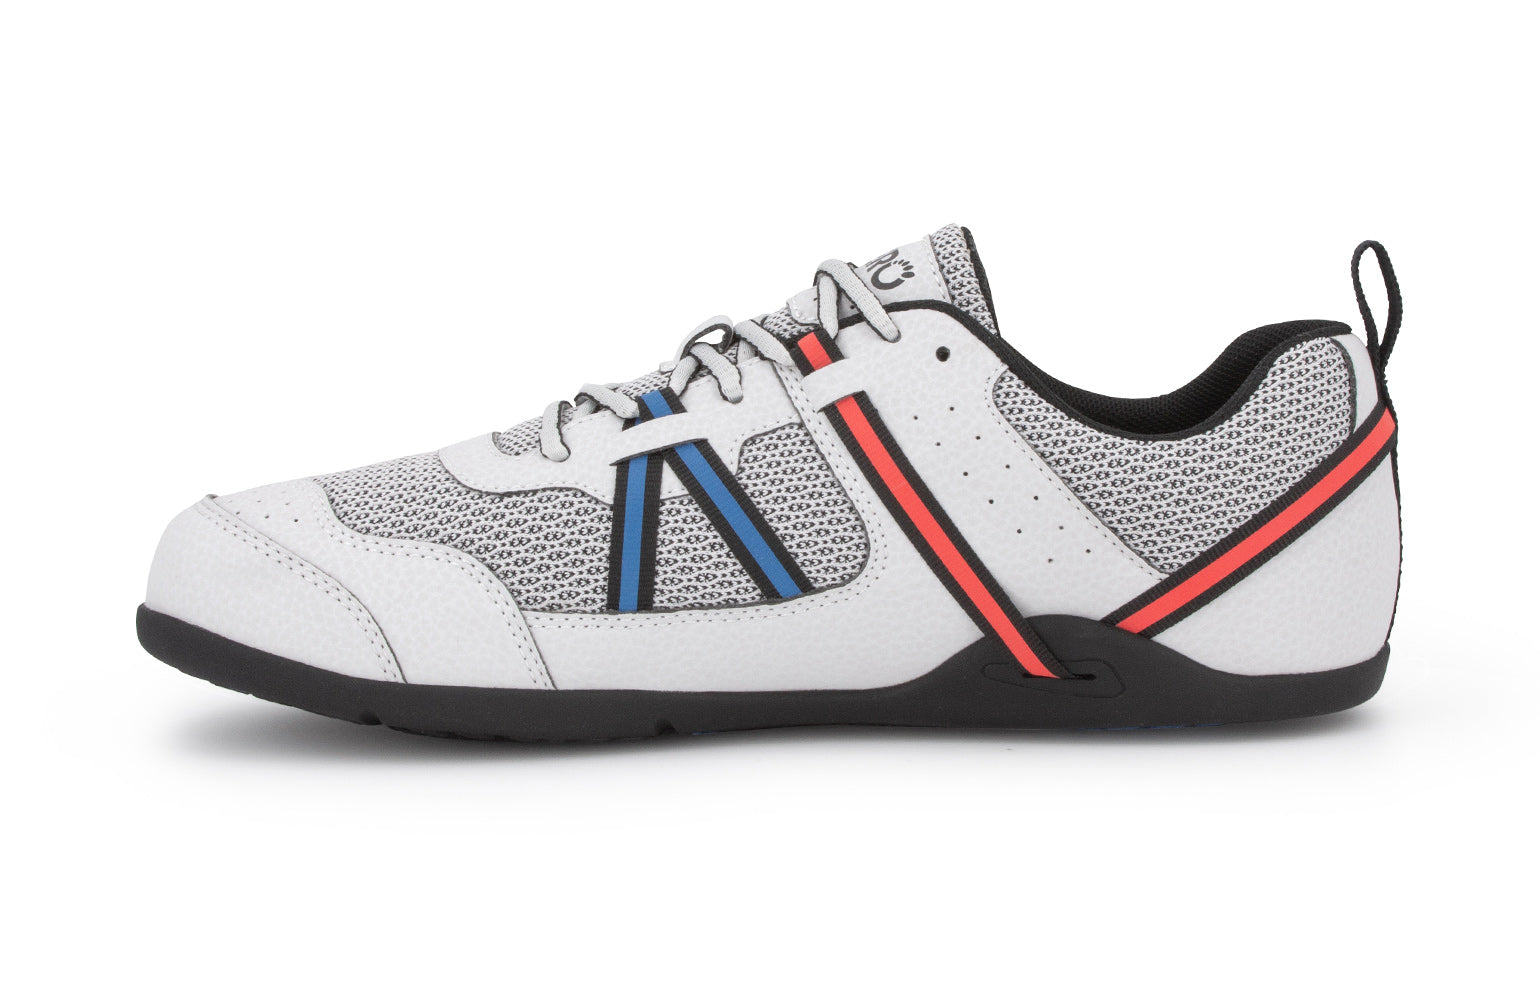 Xero Shoes Prio barfods løbesko/træningssko til mænd i farven lunar, inderside